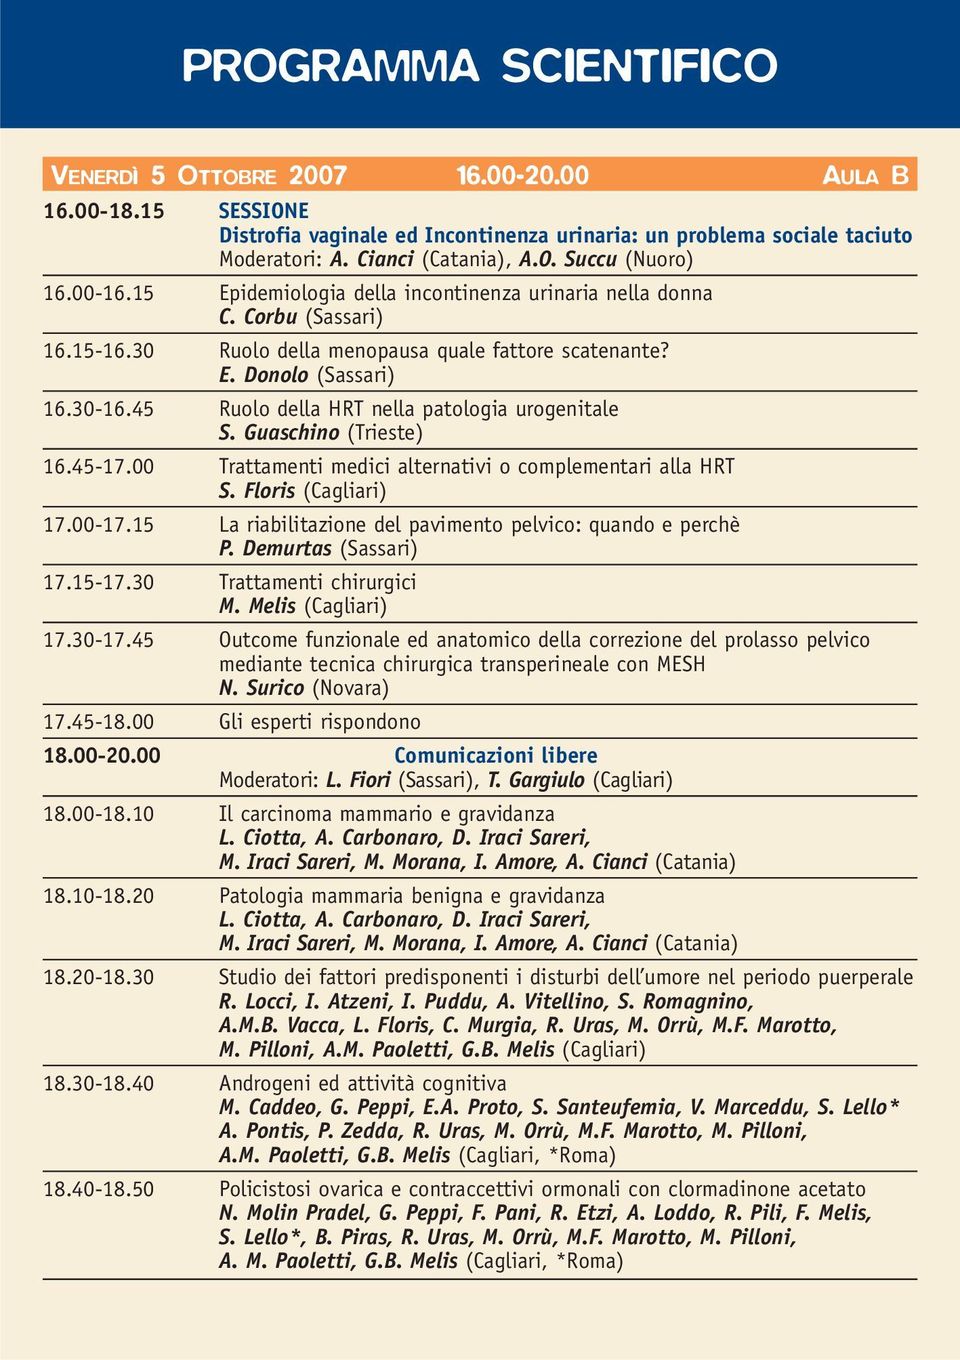 45 Ruolo della HRT nella patologia urogenitale S. Guaschino (Trieste) 16.45-17.00 Trattamenti medici alternativi o complementari alla HRT S. Floris (Cagliari) 17.00-17.